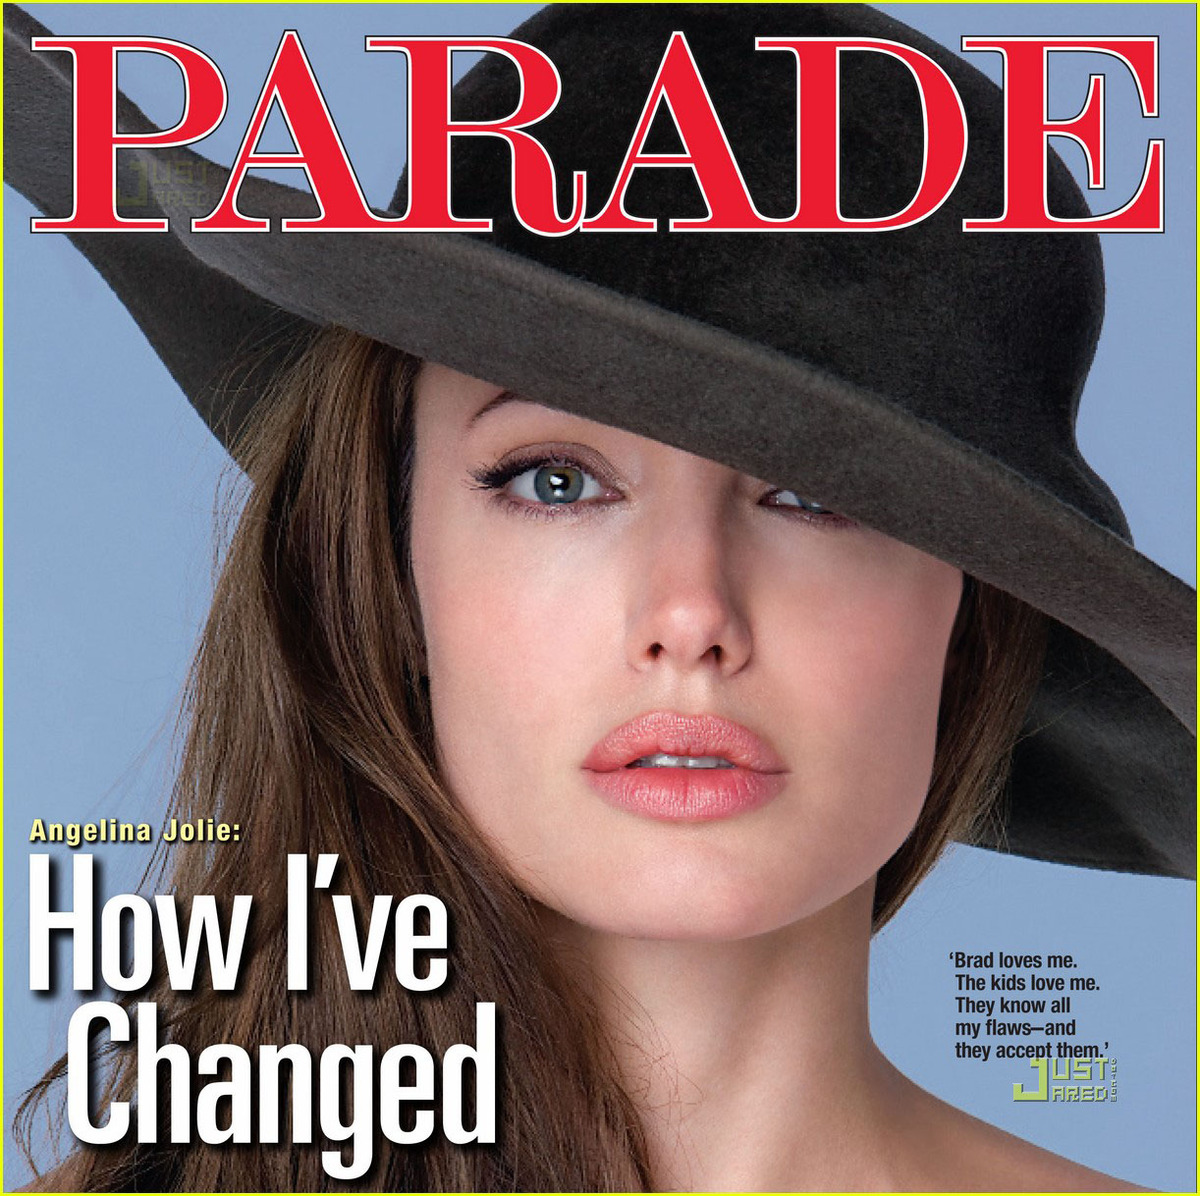 Интервью Анджелины Джоли для журнала Parade